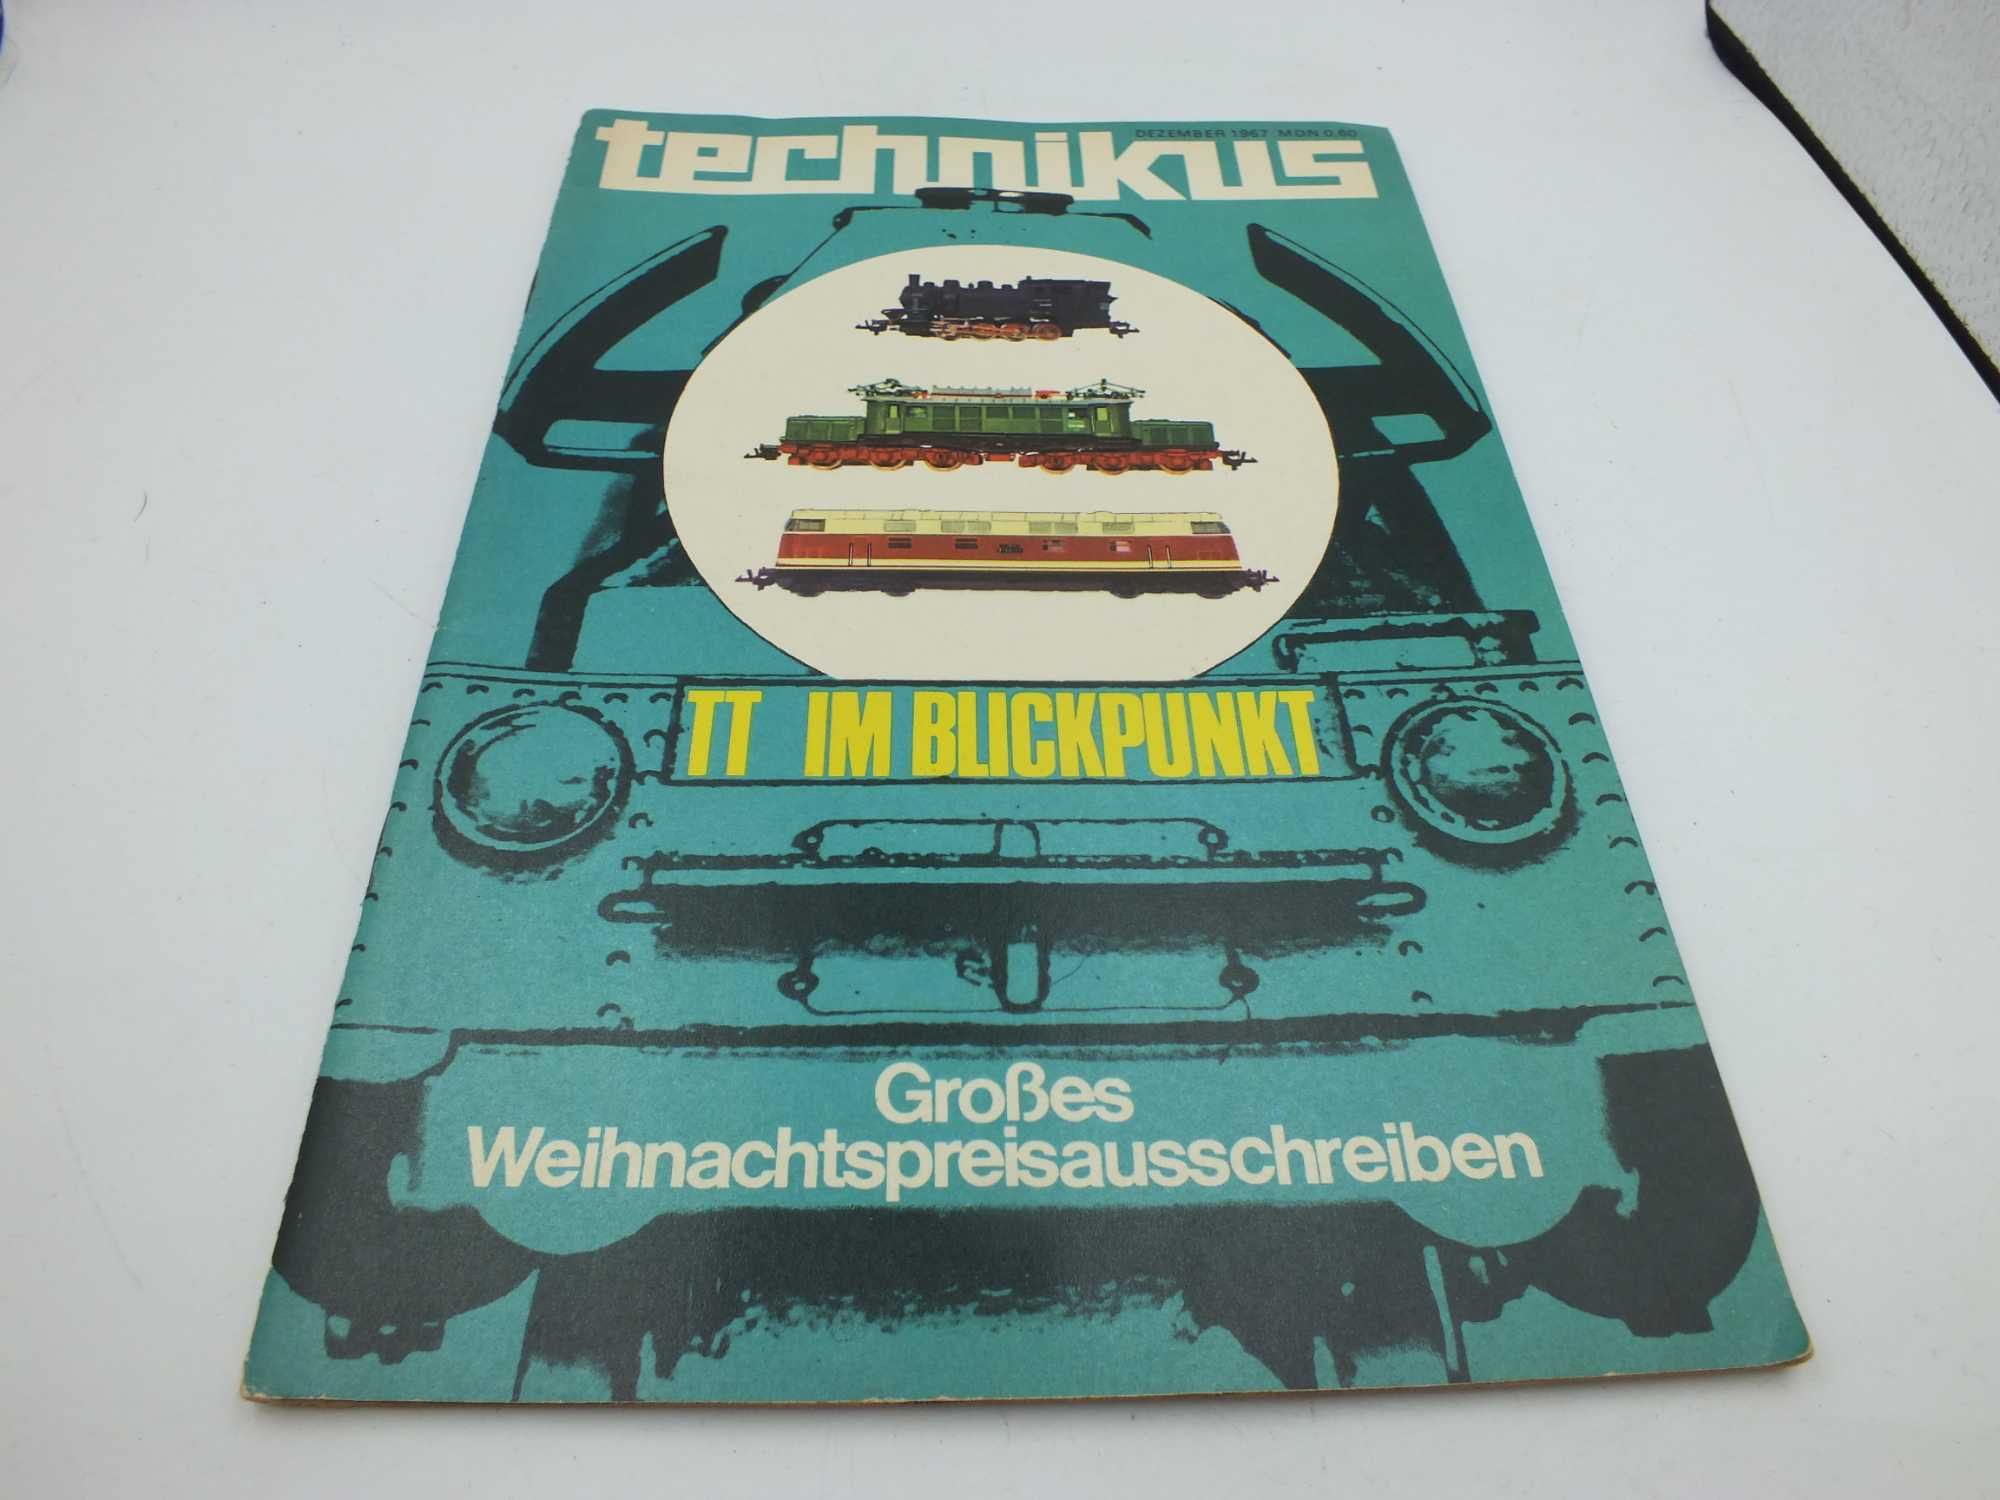 Niemiecki Technikus 1967 r czasopismo